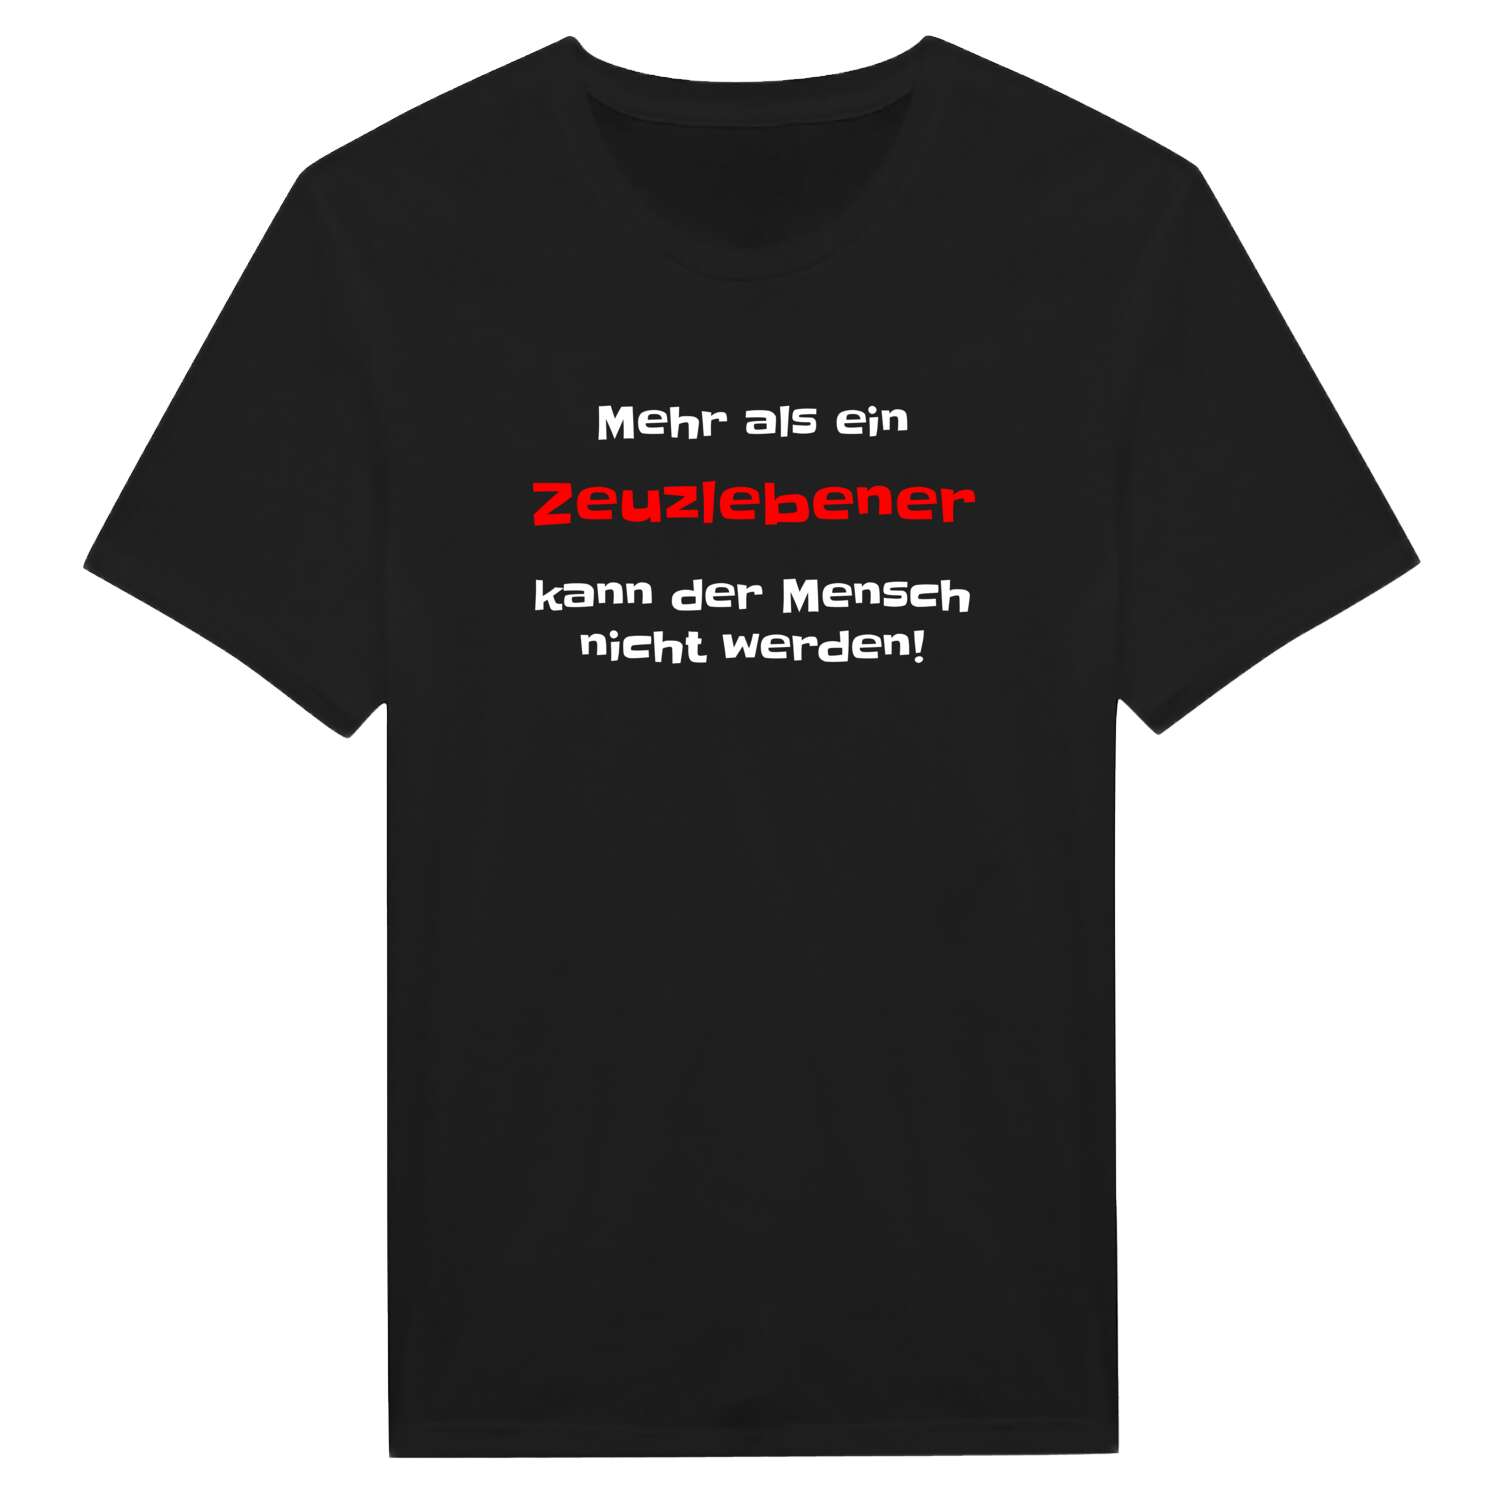 Zeuzleben T-Shirt »Mehr als ein«